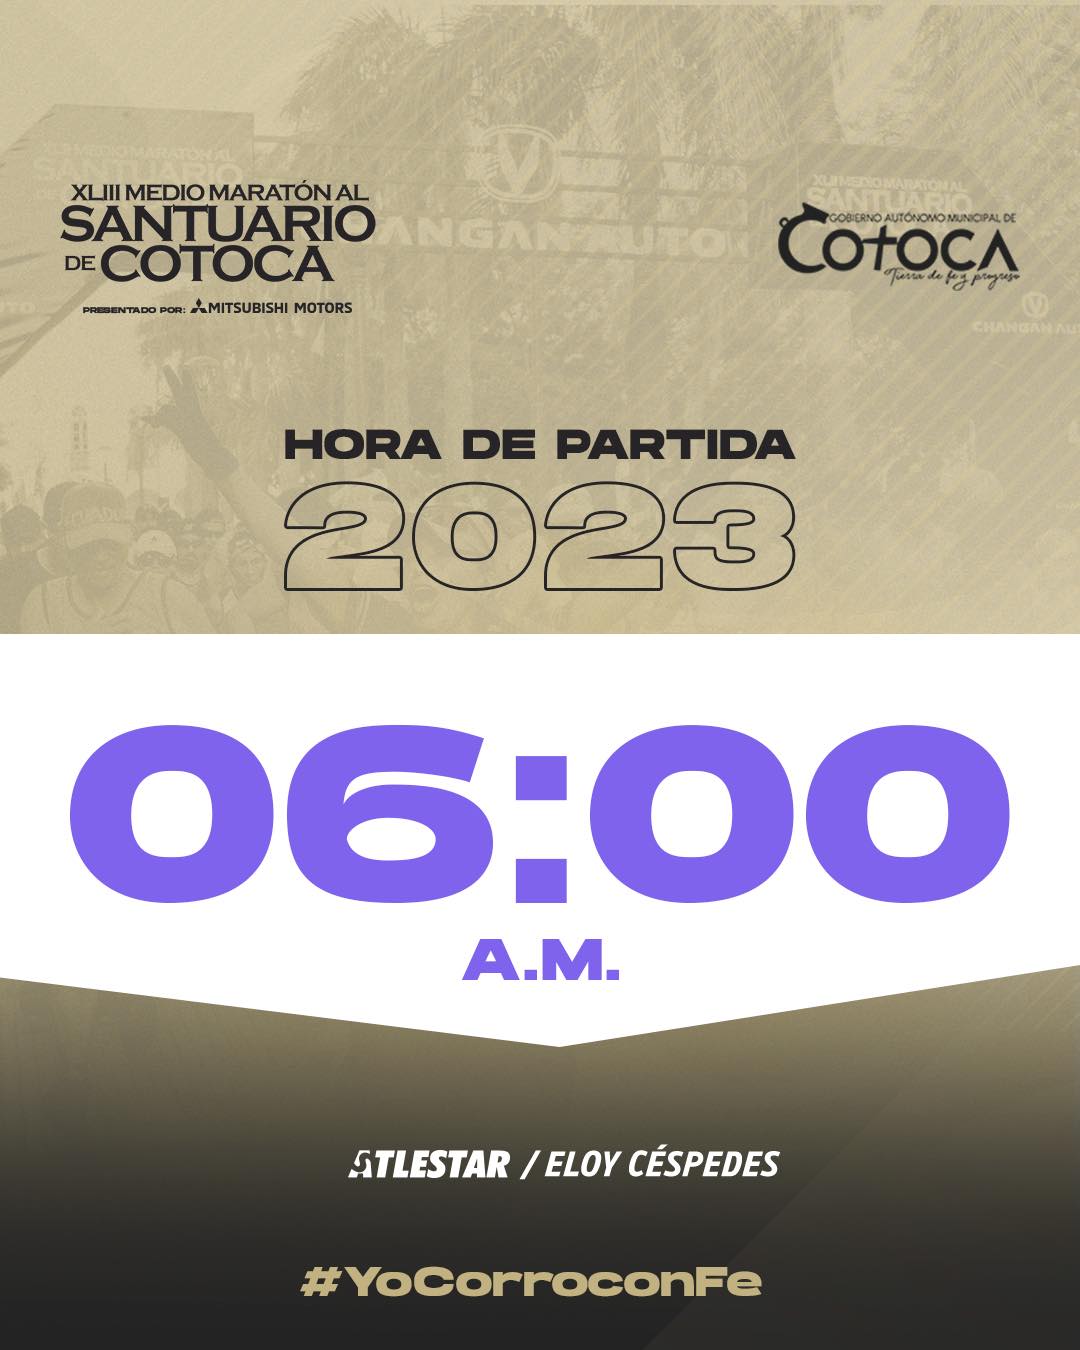 Horario de partida 06:00 para la Media Maraton al Santuario de Cotoca